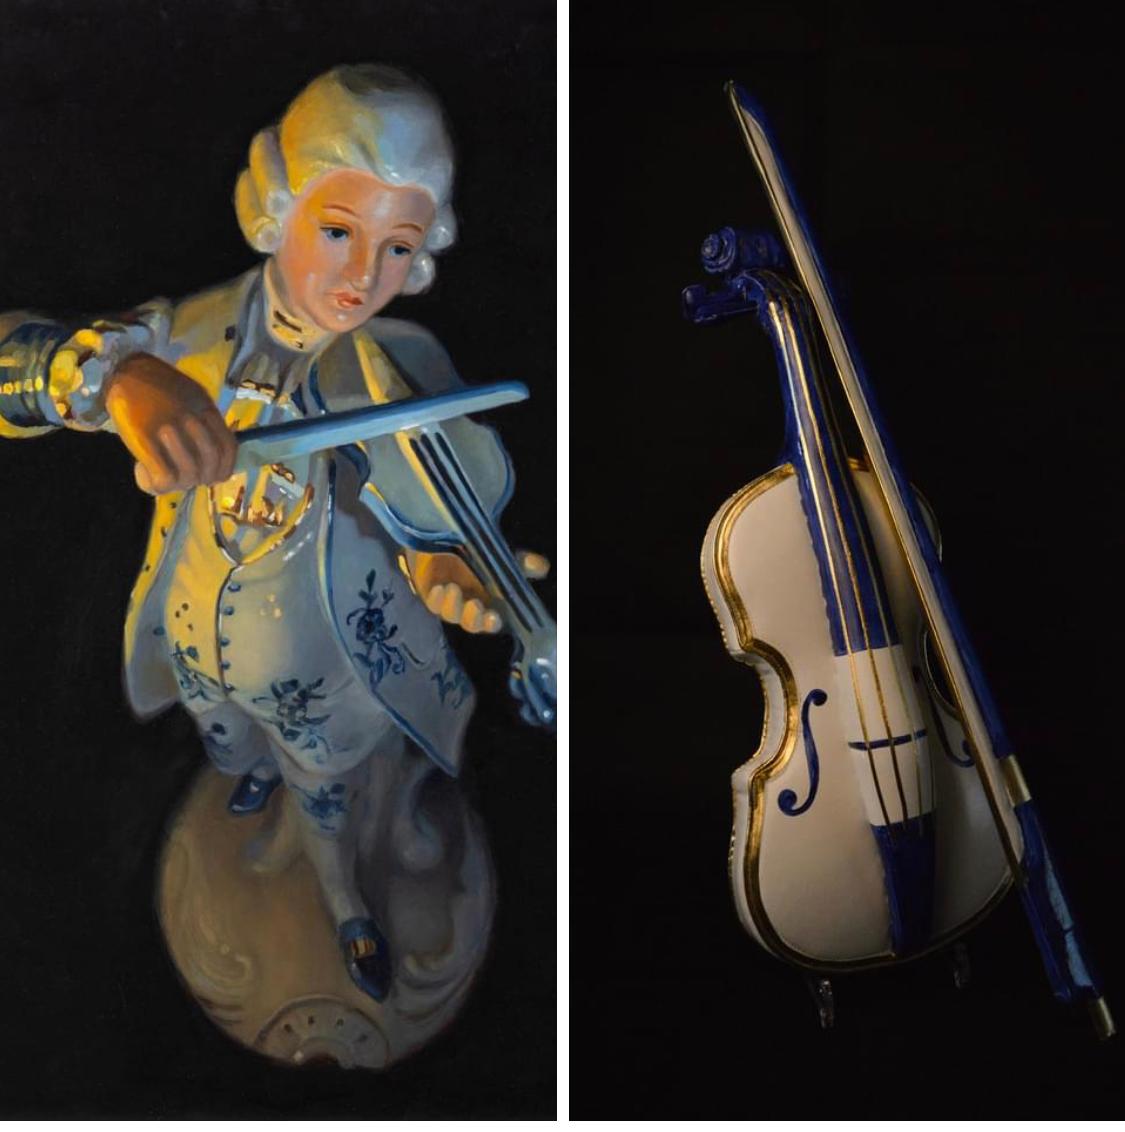 Leere Serenade - Stlllife-Gemälde einer Violine spielenden Figur aus dem 21. Jahrhundert – Painting von Astrid Ritmeester